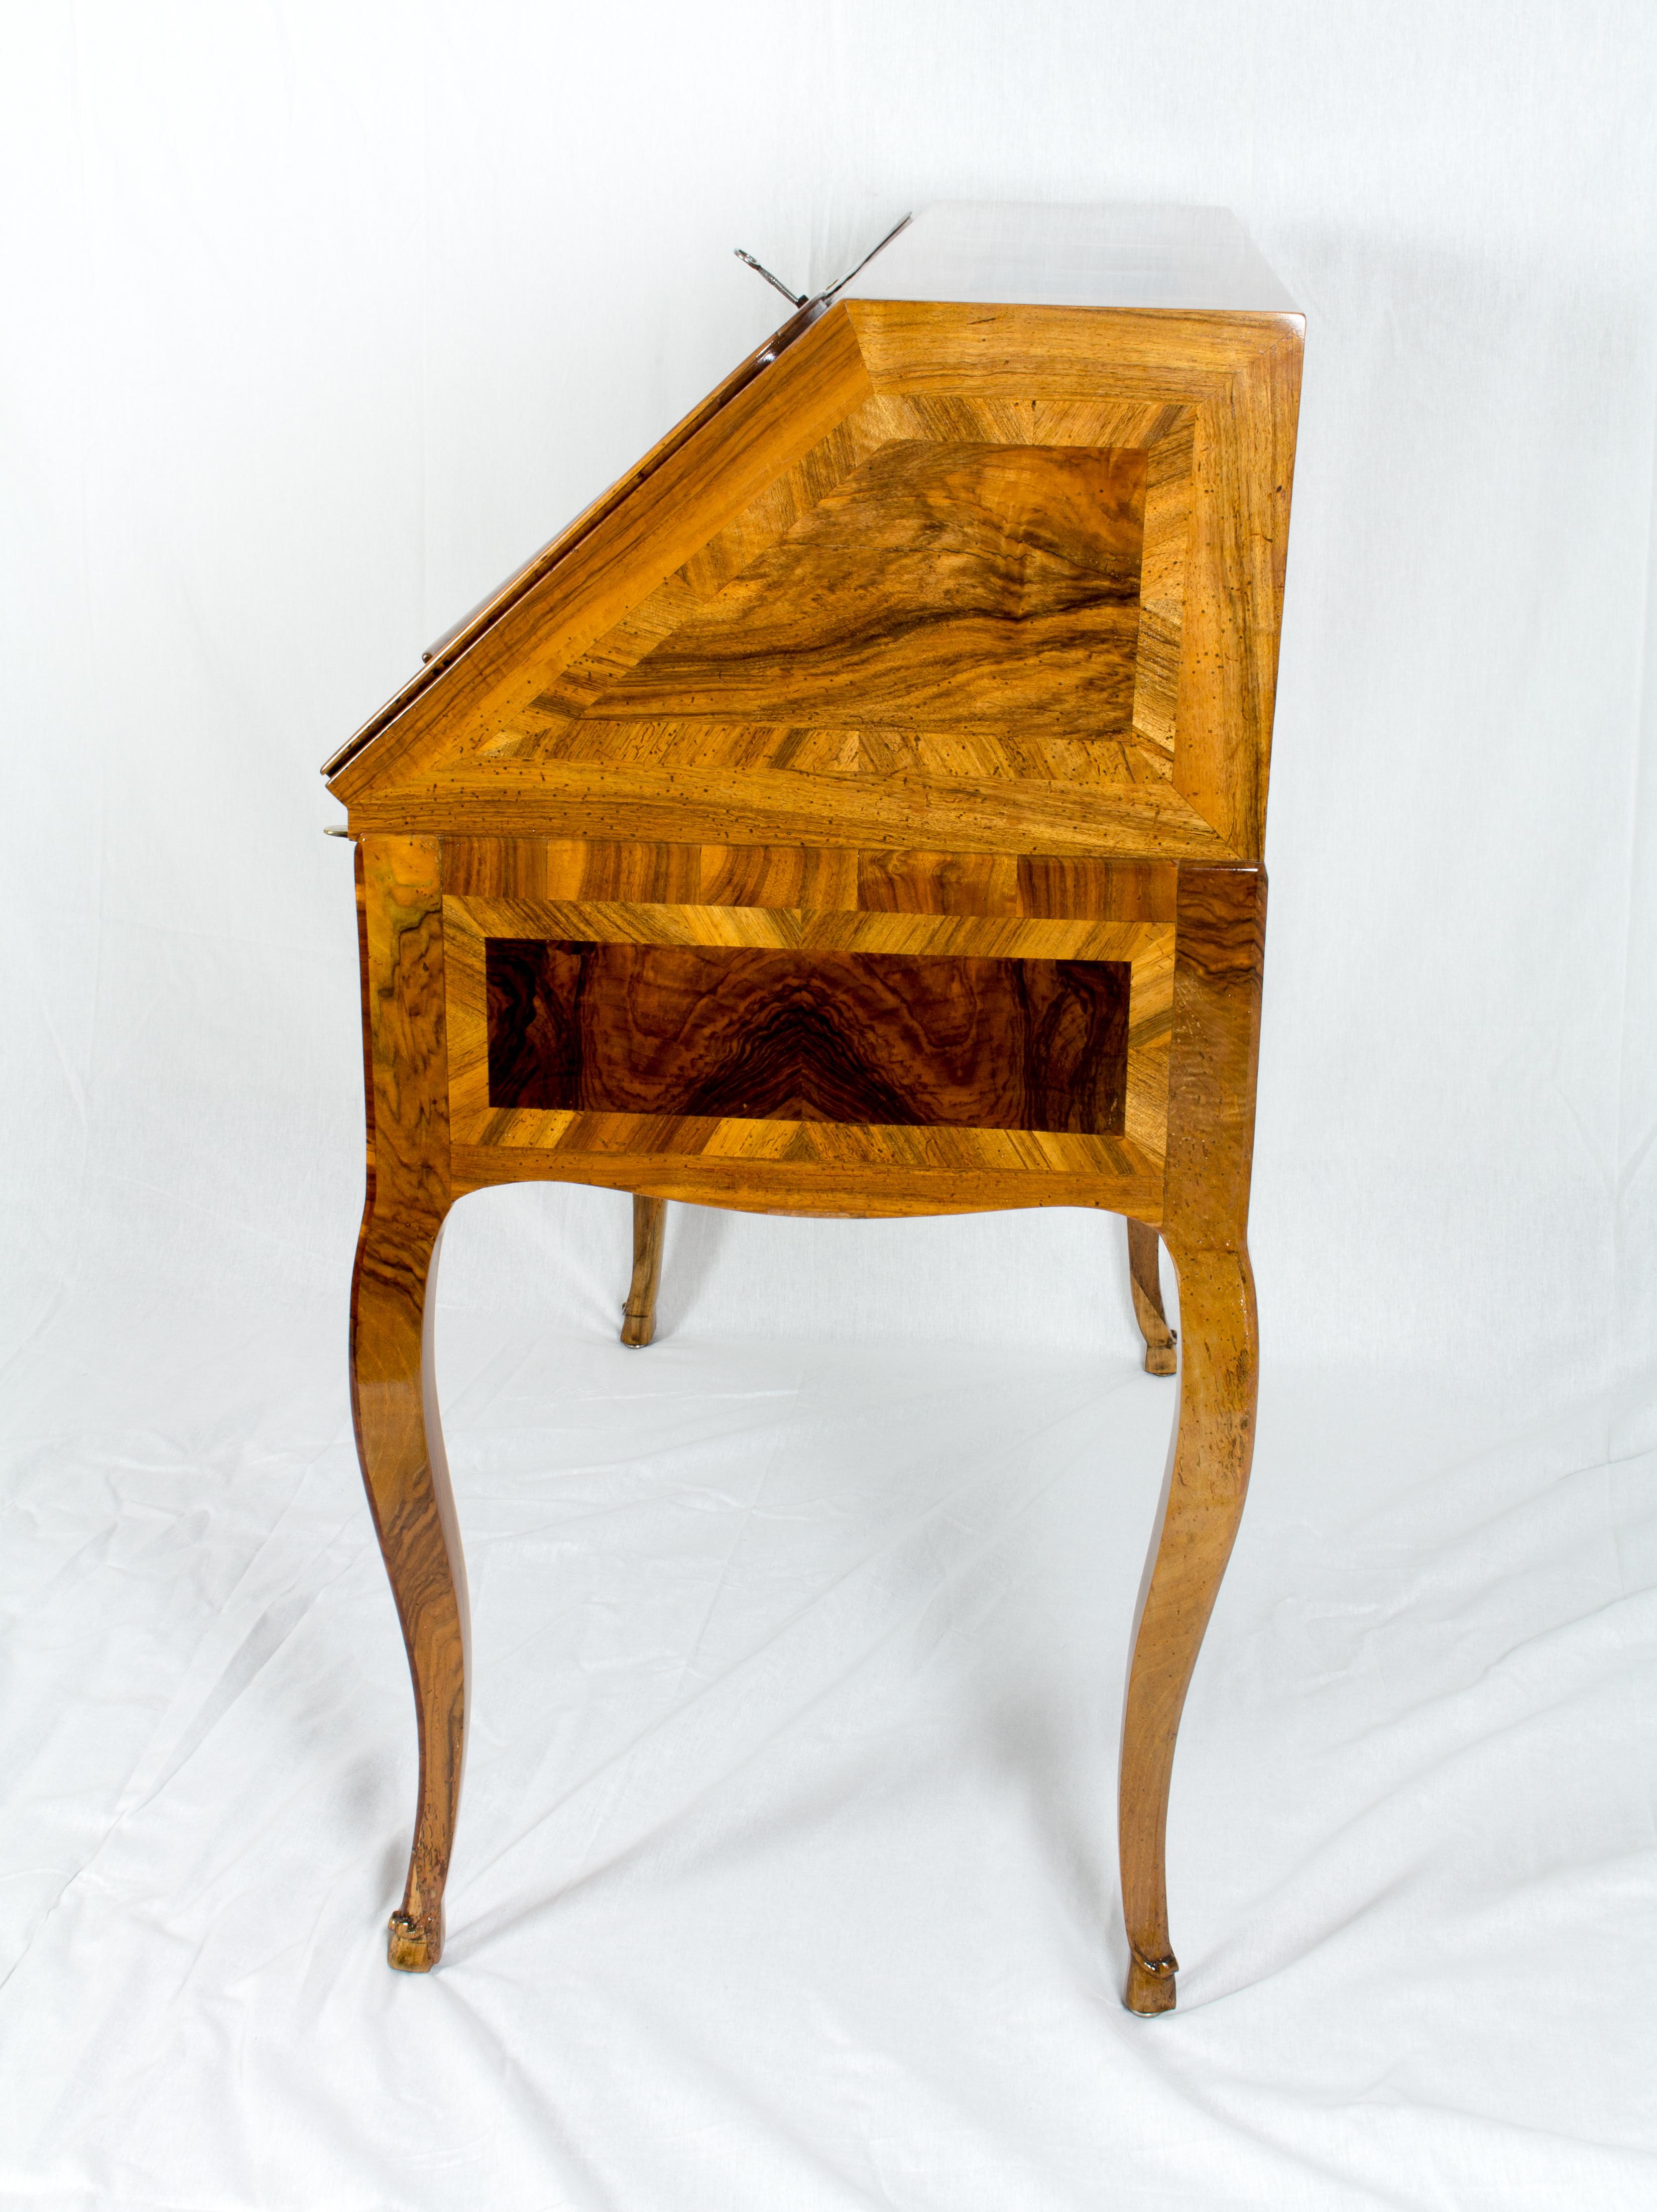 Der Schreibtisch stammt aus der Zeit um 1730 und ist mit einer schönen Intarsie aus verschiedenen Nussbaum- / Nussbaumwurzelhölzern auf einem Kiefernkorpus belegt.
Alle drei Schlösser sind original aus dieser Zeit, ebenso wie die Beschläge. 
Das